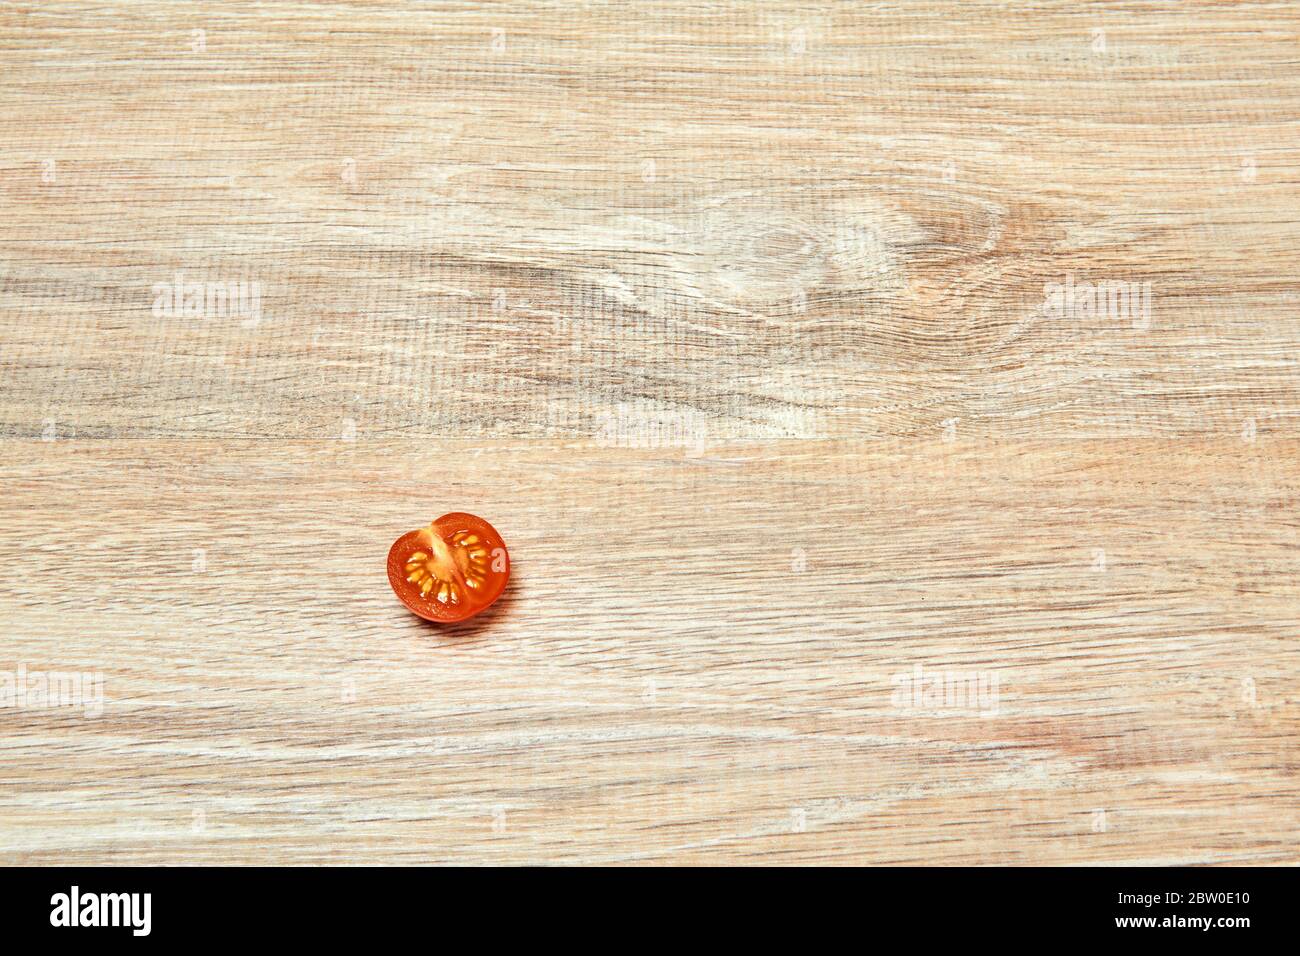 solo pomodoro a mezza ciliegia sul bordo di una superficie di tavola di legno Foto Stock